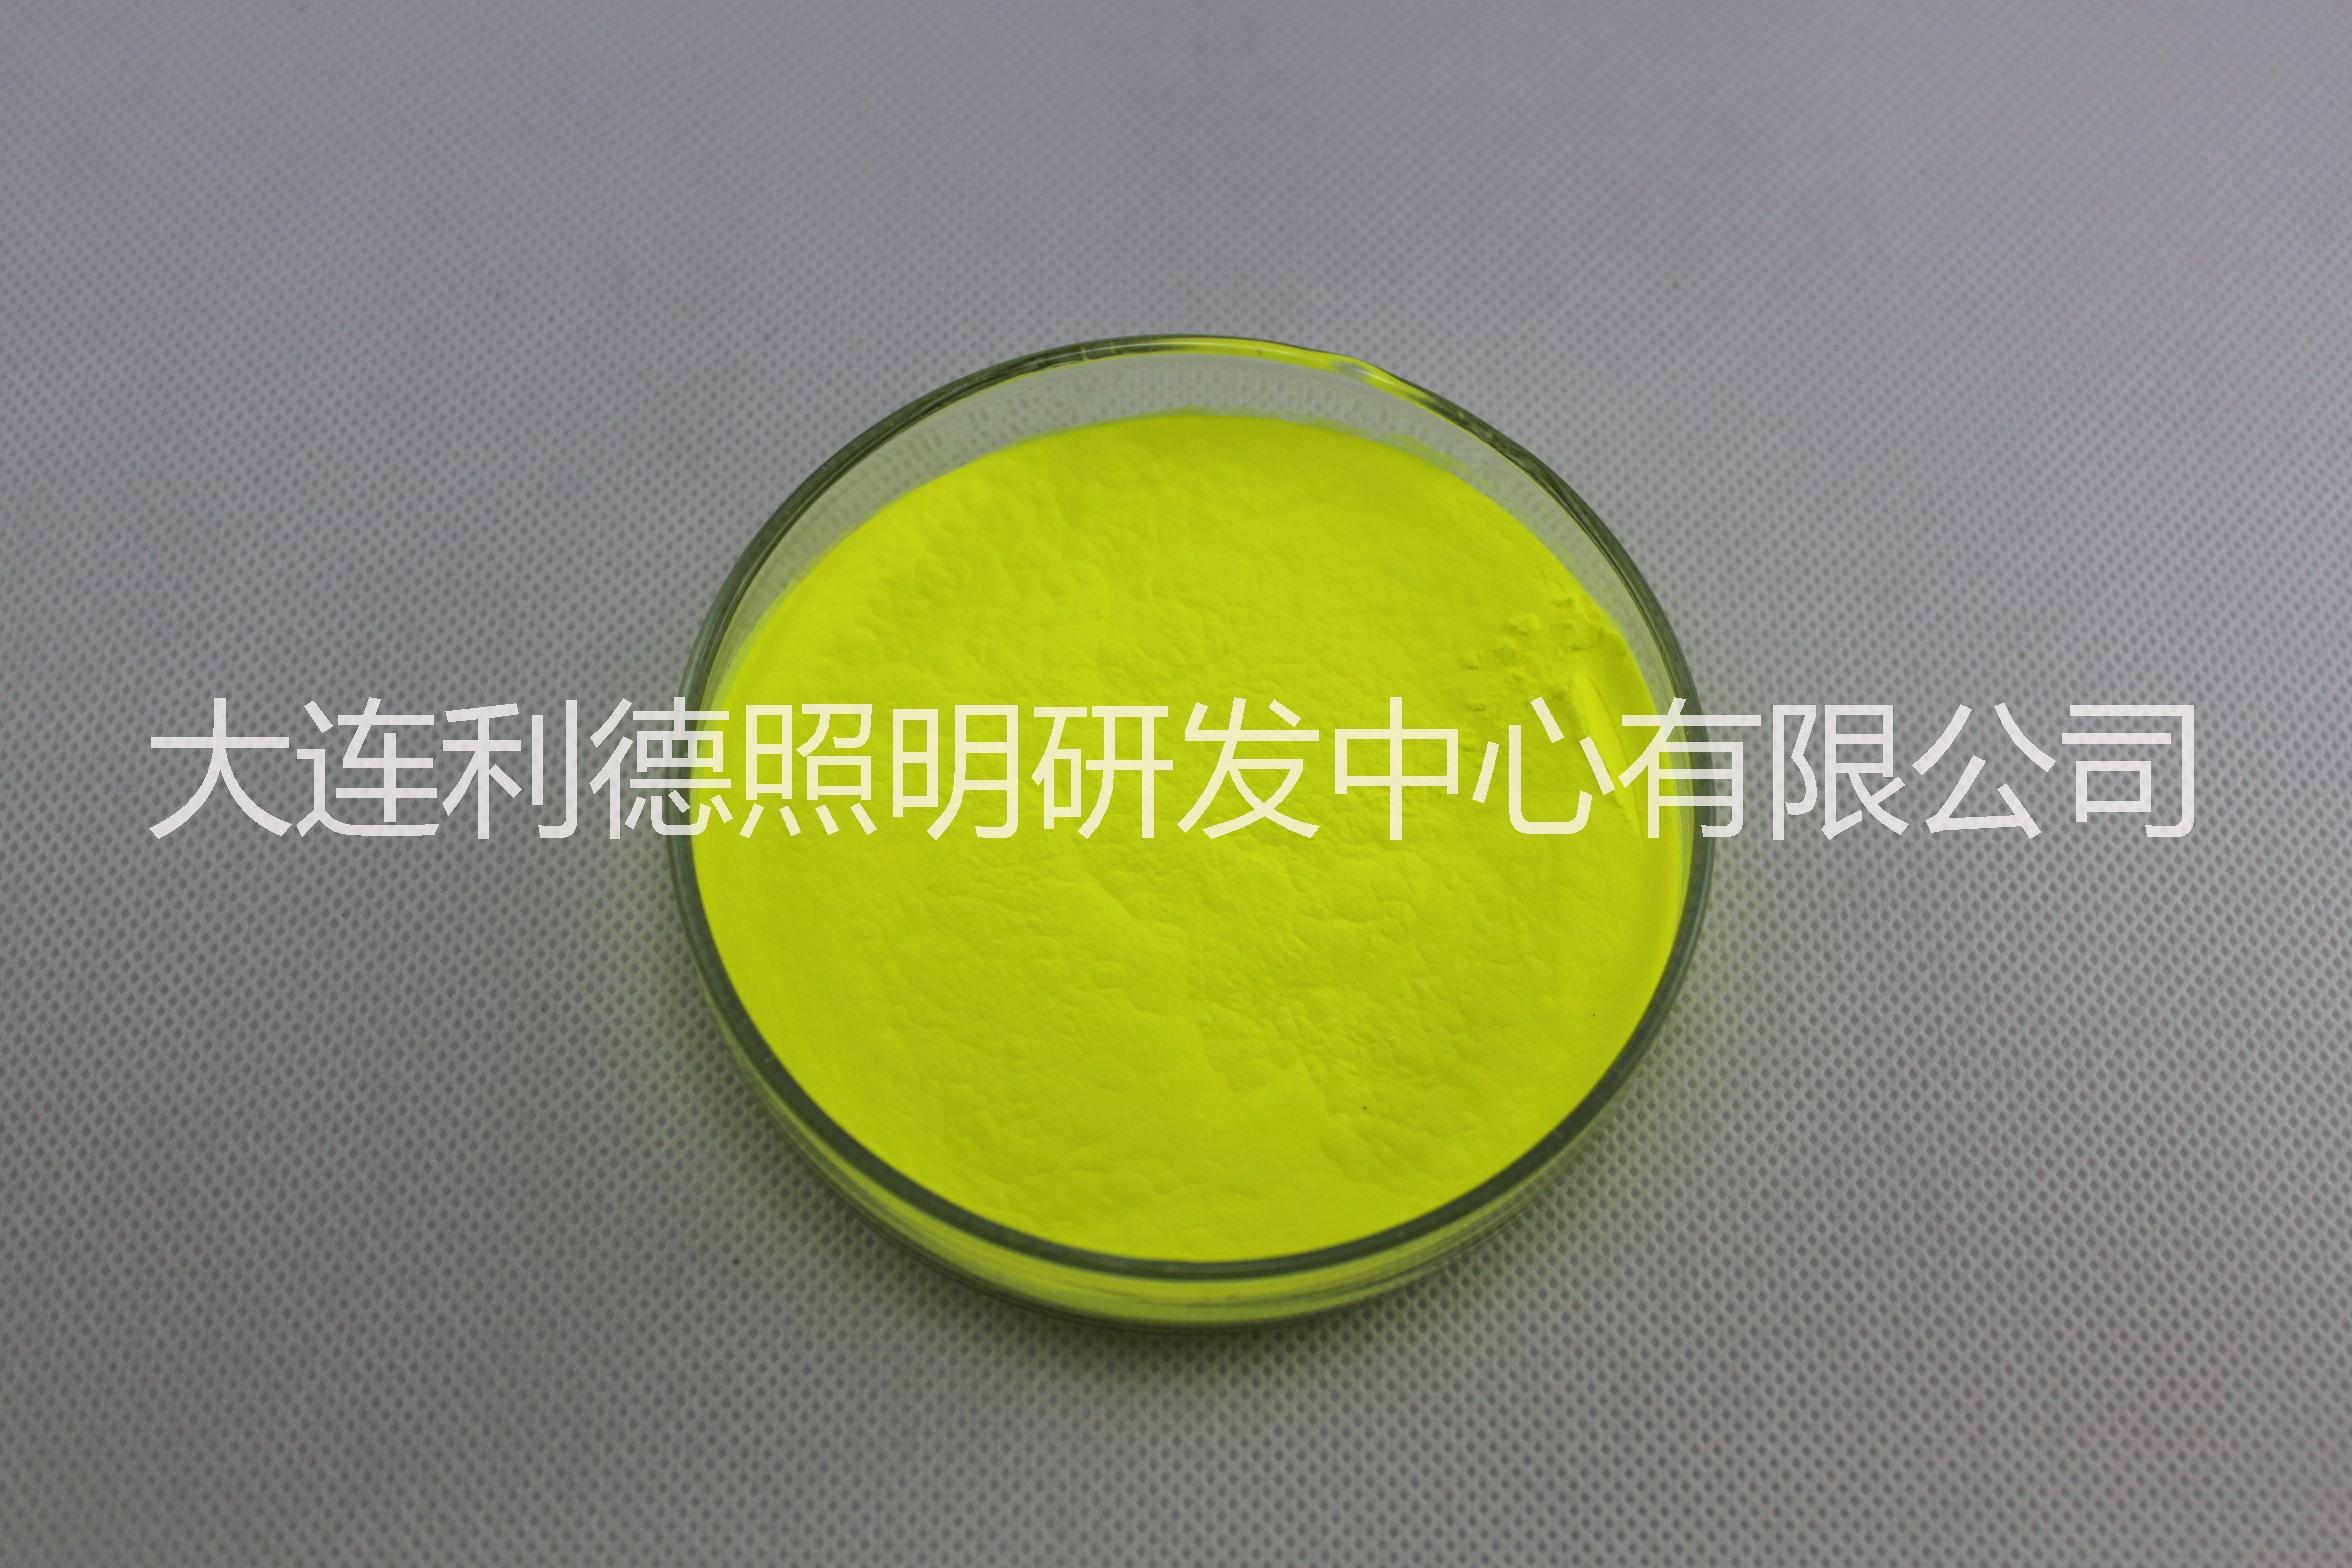 镓酸盐荧光粉YAGG-3856高显指高显色绿色高色温9000K LED荧光粉 绿色荧光粉图片